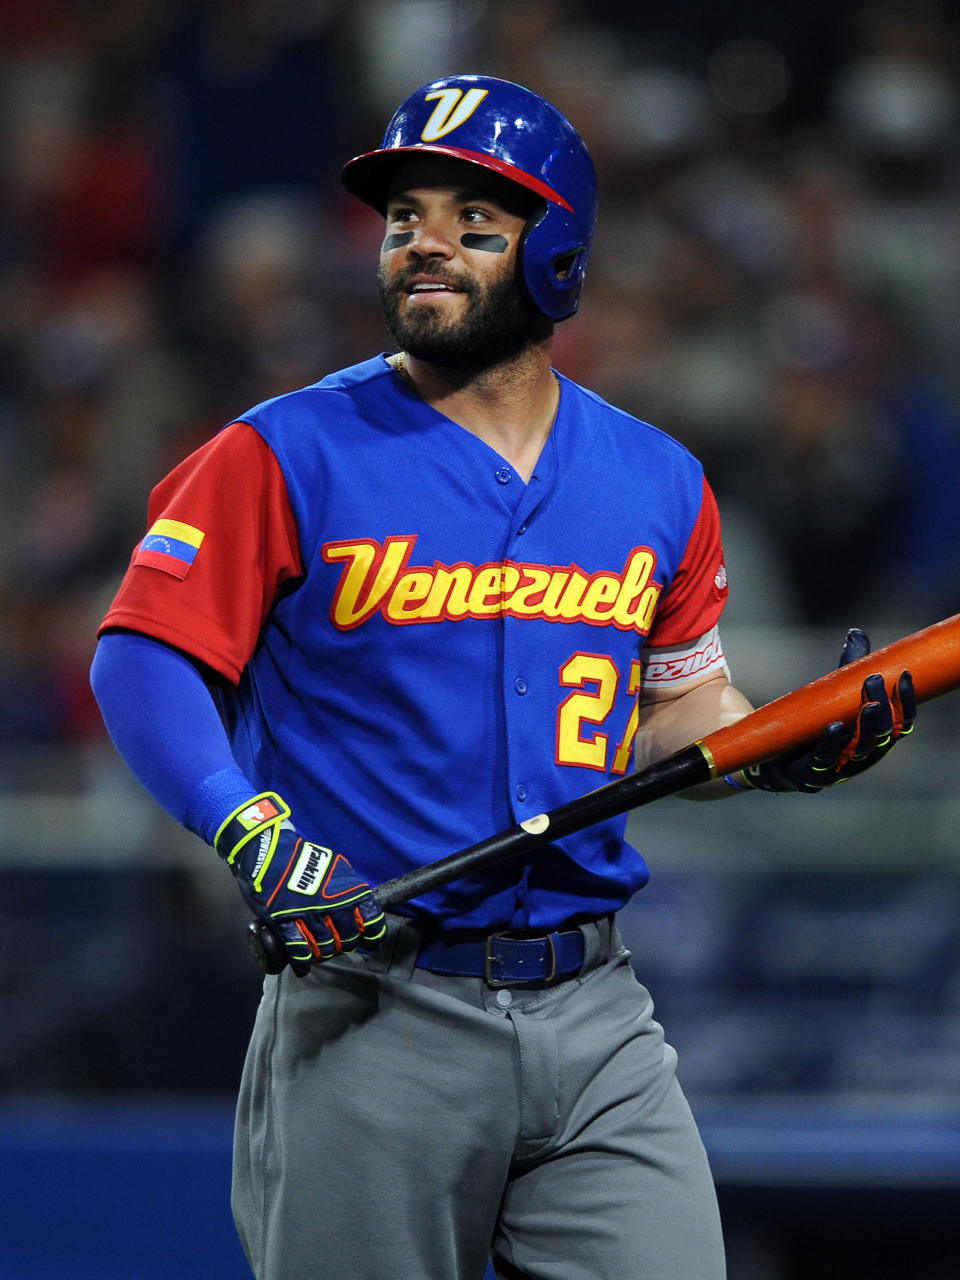 Altuve representó a Venezuela en el Clásico Mundial de Béisbol de 2017 y planea hacerlo nuevamente en 2023. (Foto: John Cordes/Icon Sportswire via Getty Images)